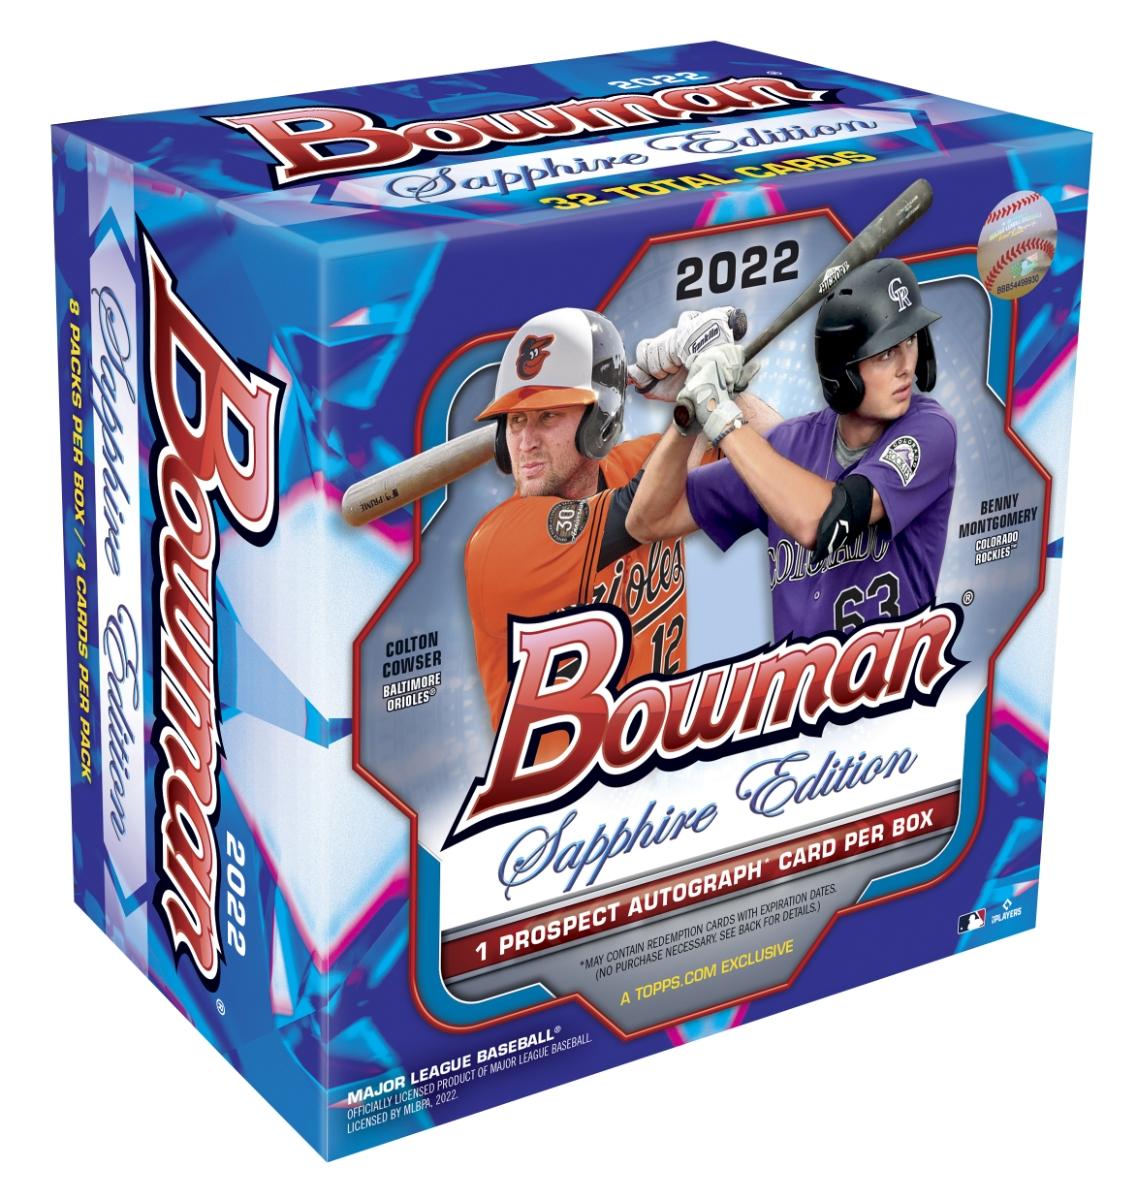 2022 Bowman Baseball Sapphire Edition Hobby Box DA Card World